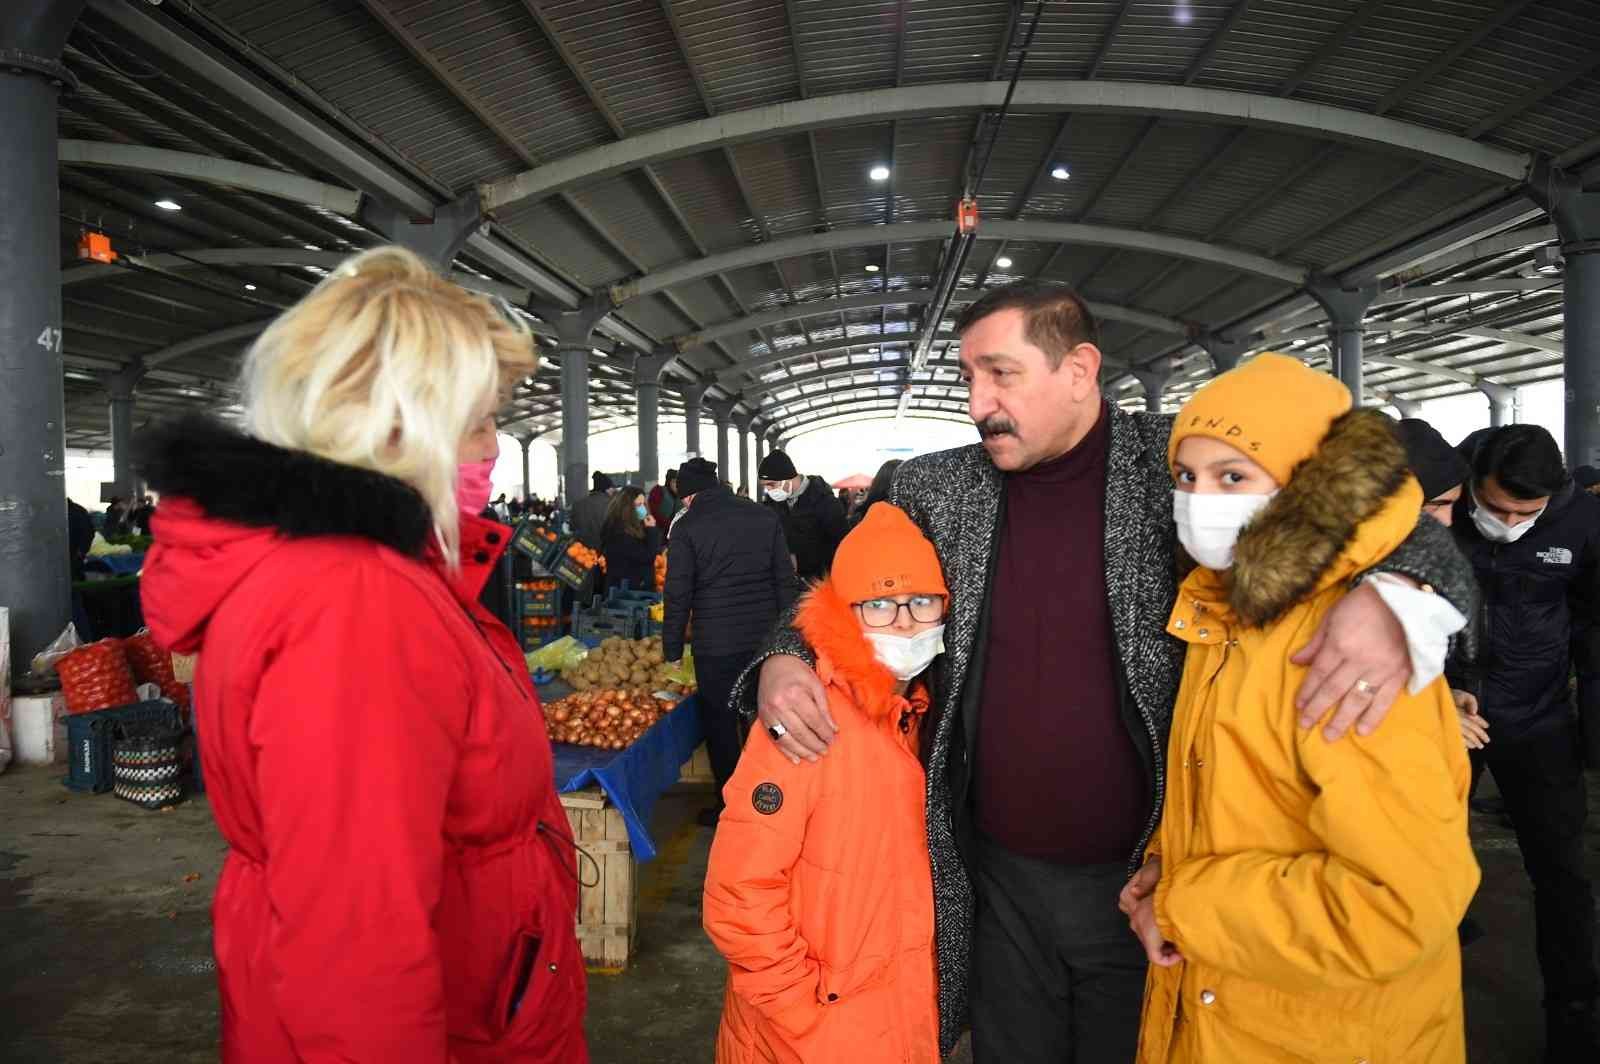 Başkan Vidinlioğlu, Kuzeykent pazarında esnaf ve vatandaşlarla bir araya geldi #kastamonu